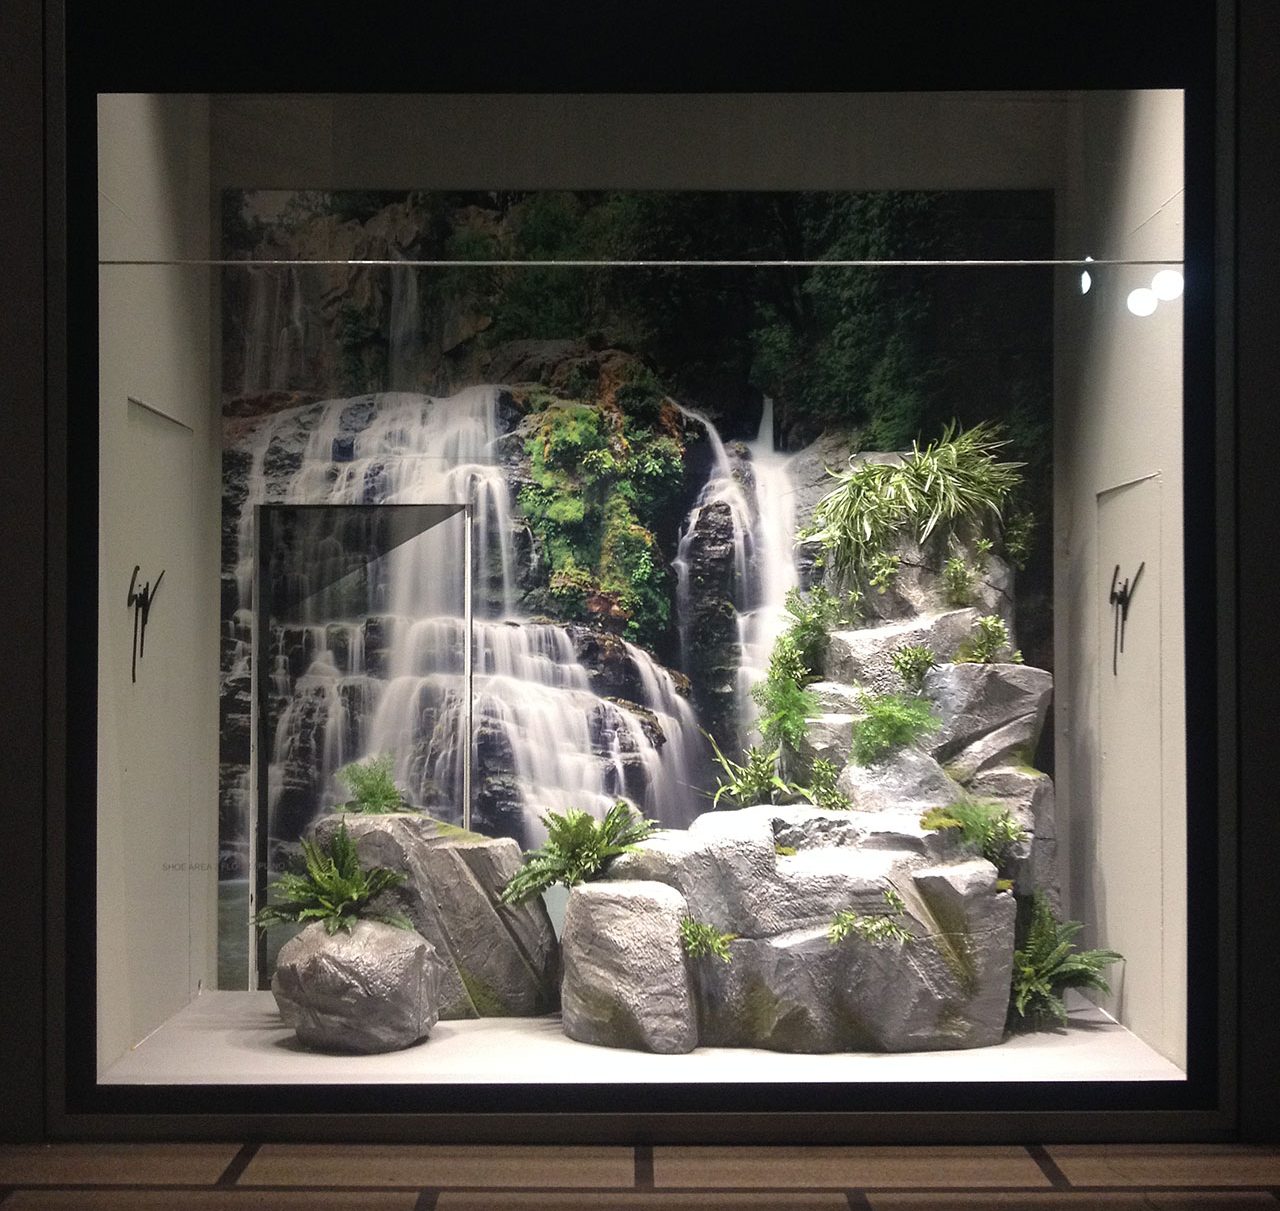 Zanotto window fittings by Artes Group International